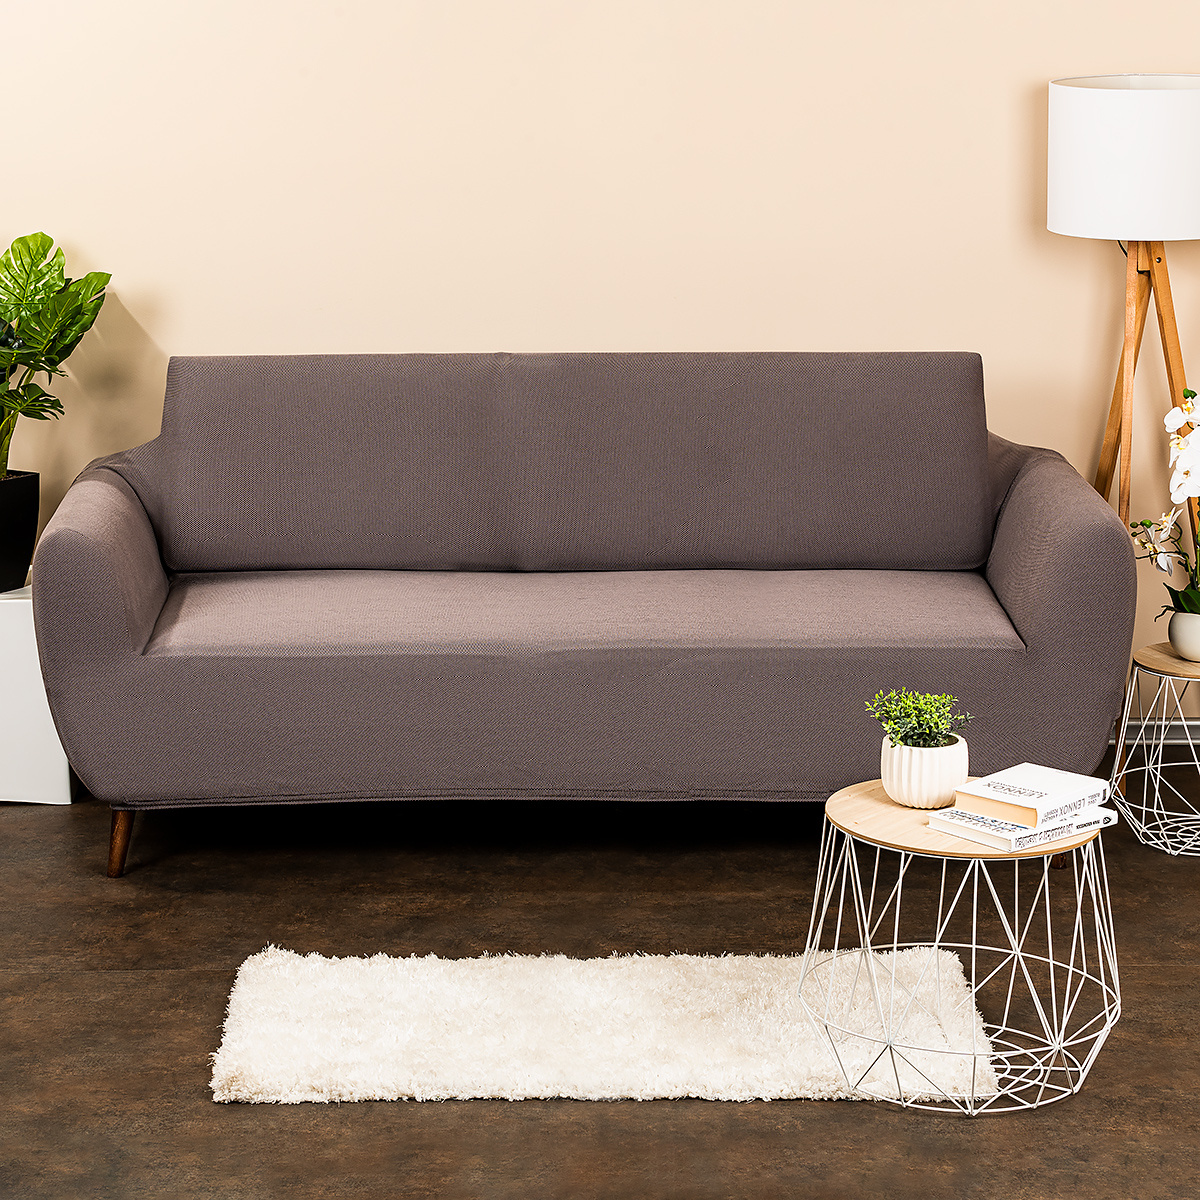 Poza Husa multielastica 4Home Comfort pentru canapea, gri, 180 - 220 cm